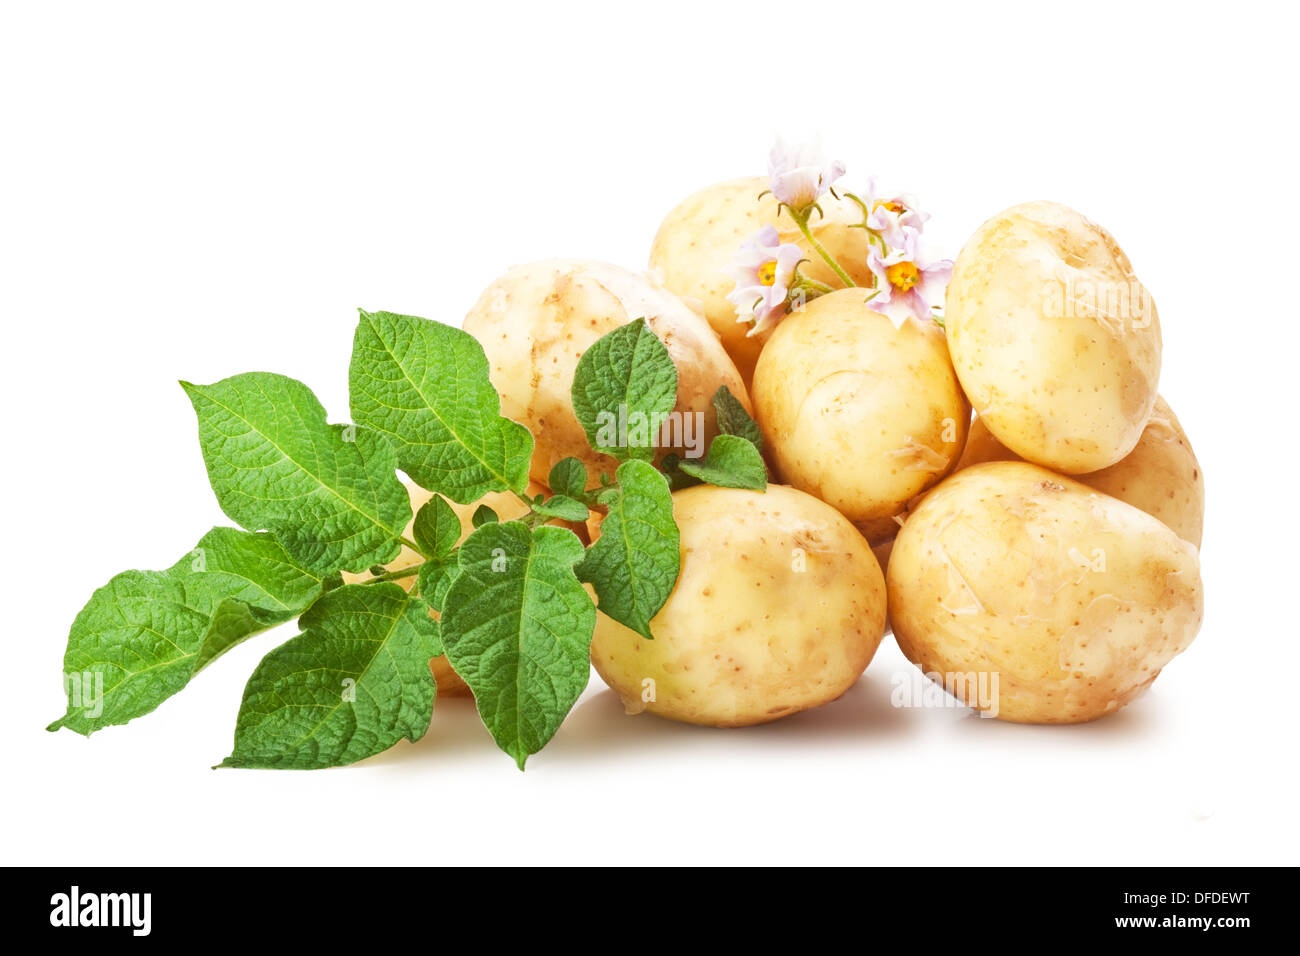 Haufen von Reifen Kartoffeln, Gemüse mit grünen Blättern, isoliert auf weißem Hintergrund Stockfoto